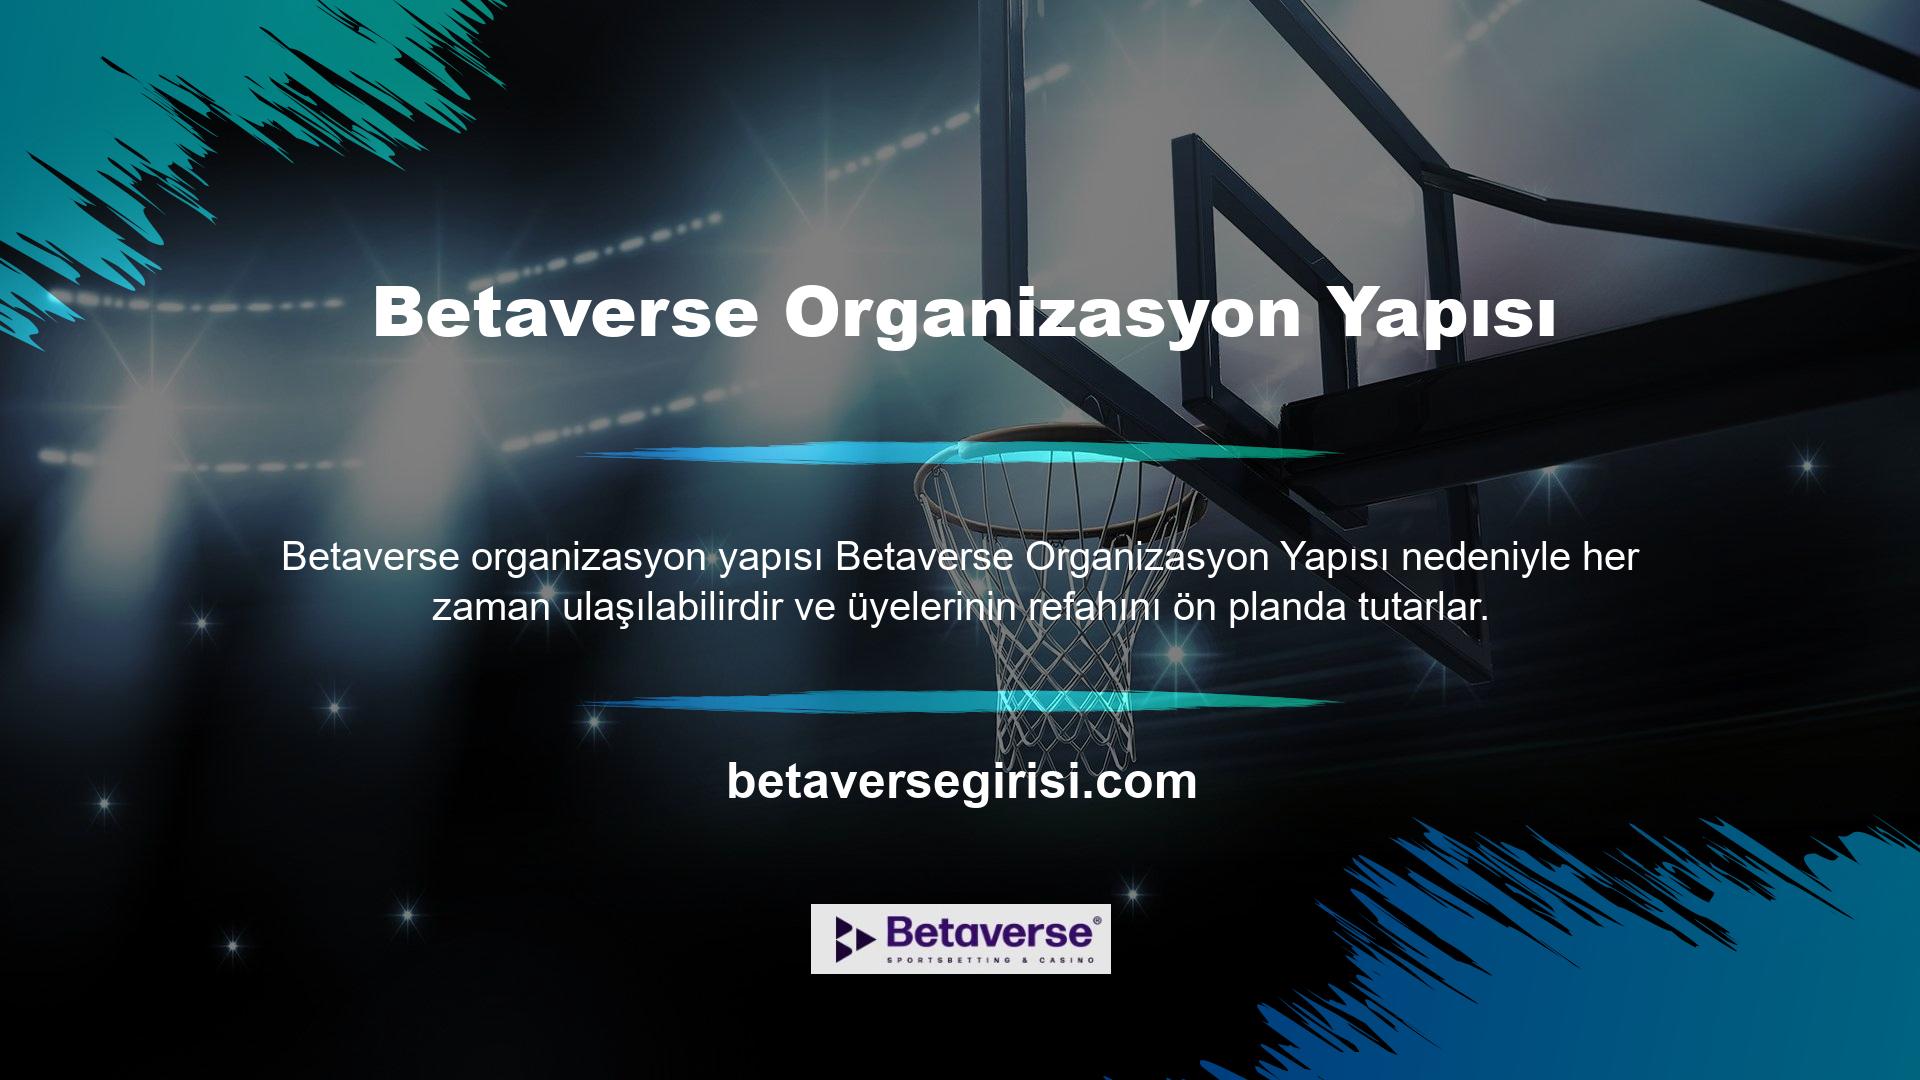 Betaverse altyapı sağlayıcıları, lisansörleri ve erişilebilirlik açısından Türkiye'nin önde gelen bahis ve casino oyun sitelerinden biridir